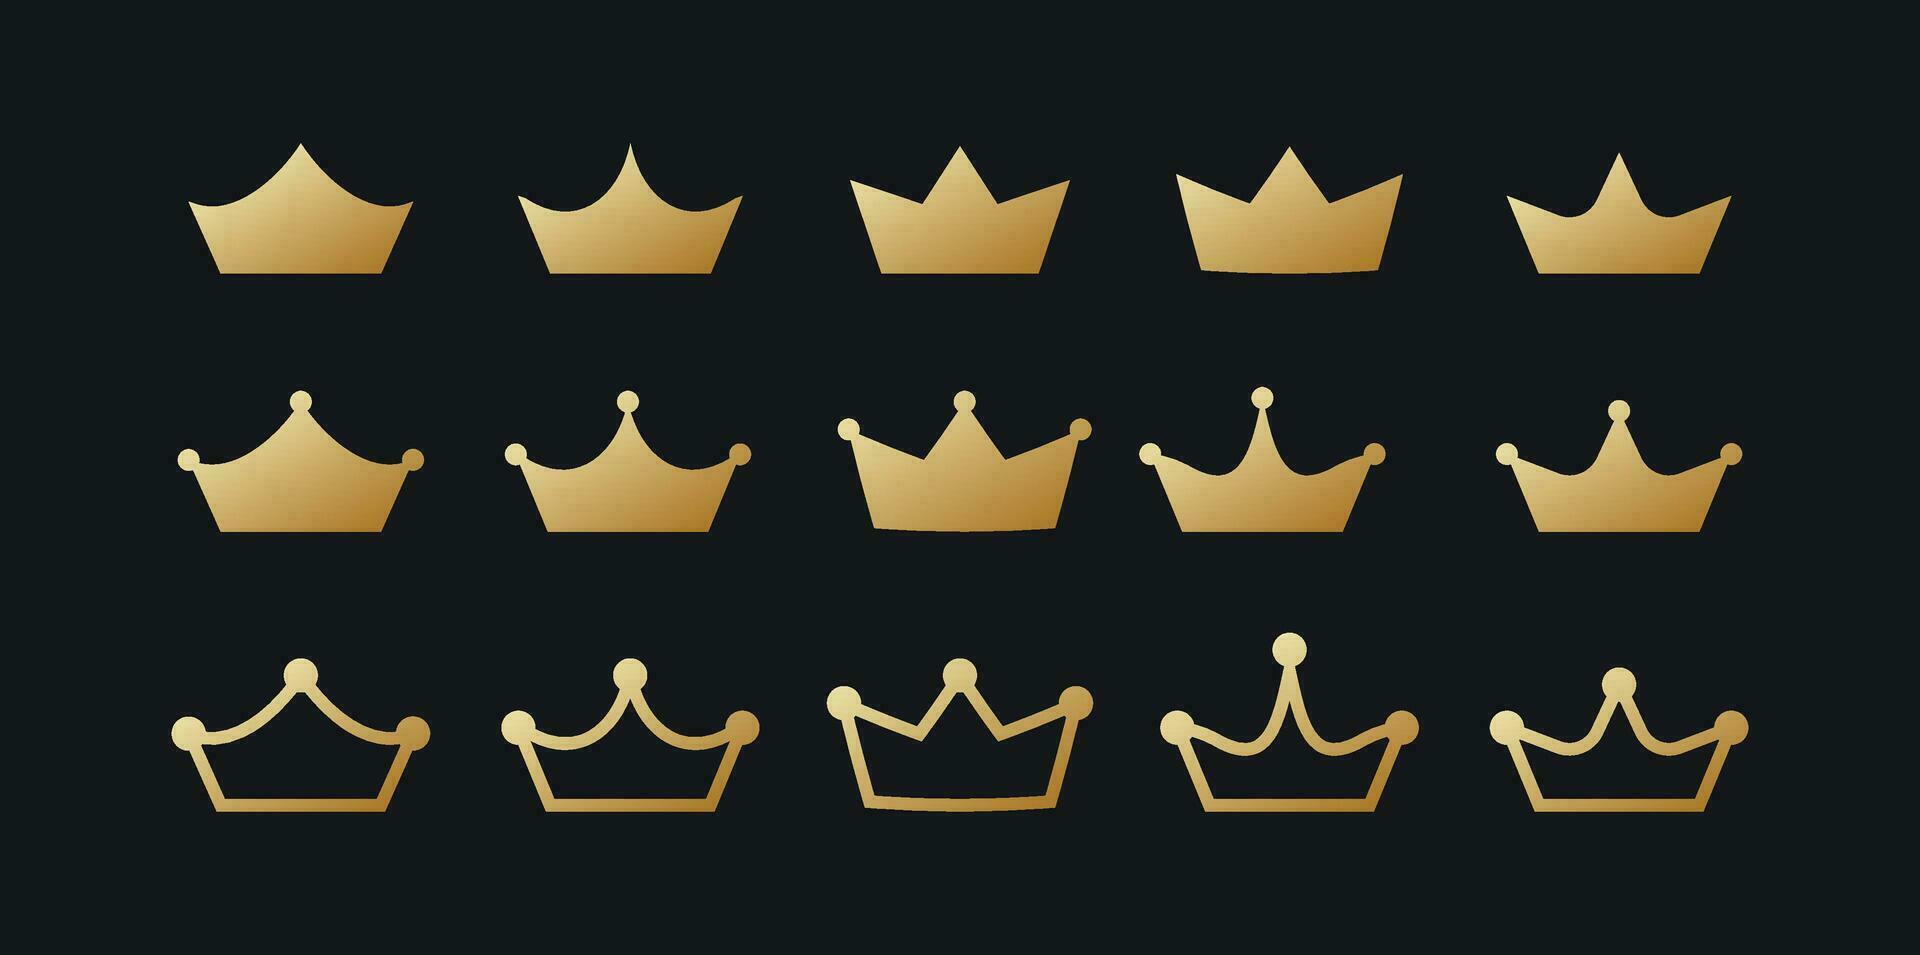 d'oro corone impostare. monarca vip copricapo con imperiale araldico simboli e classico design di dominante vettore regno